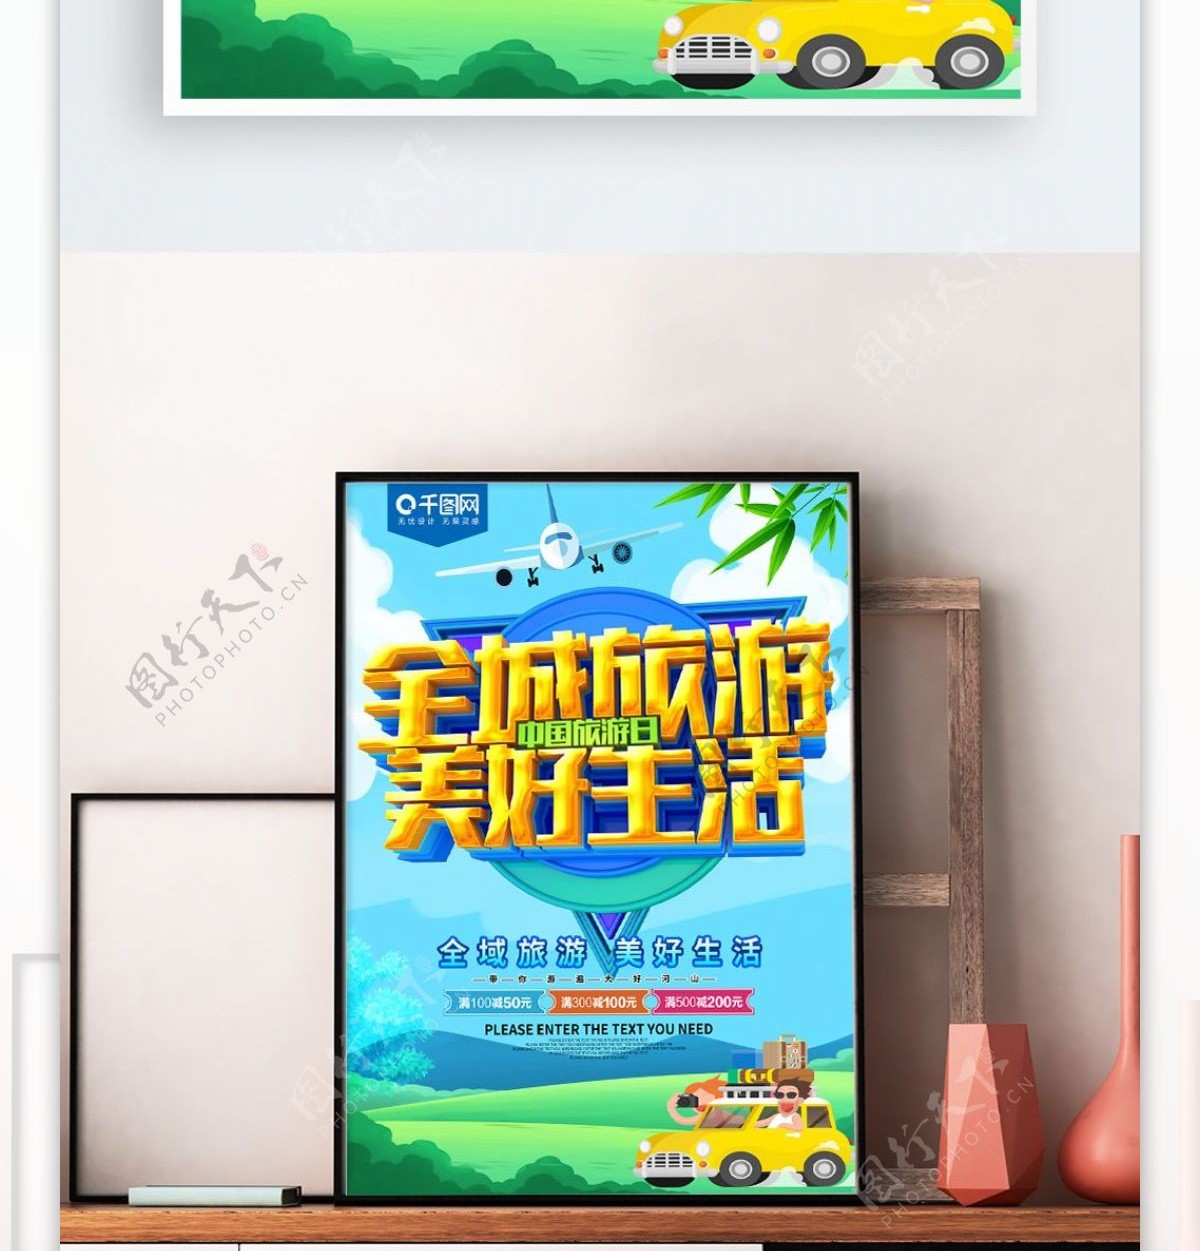 全城旅游美好生活中国旅游日海报